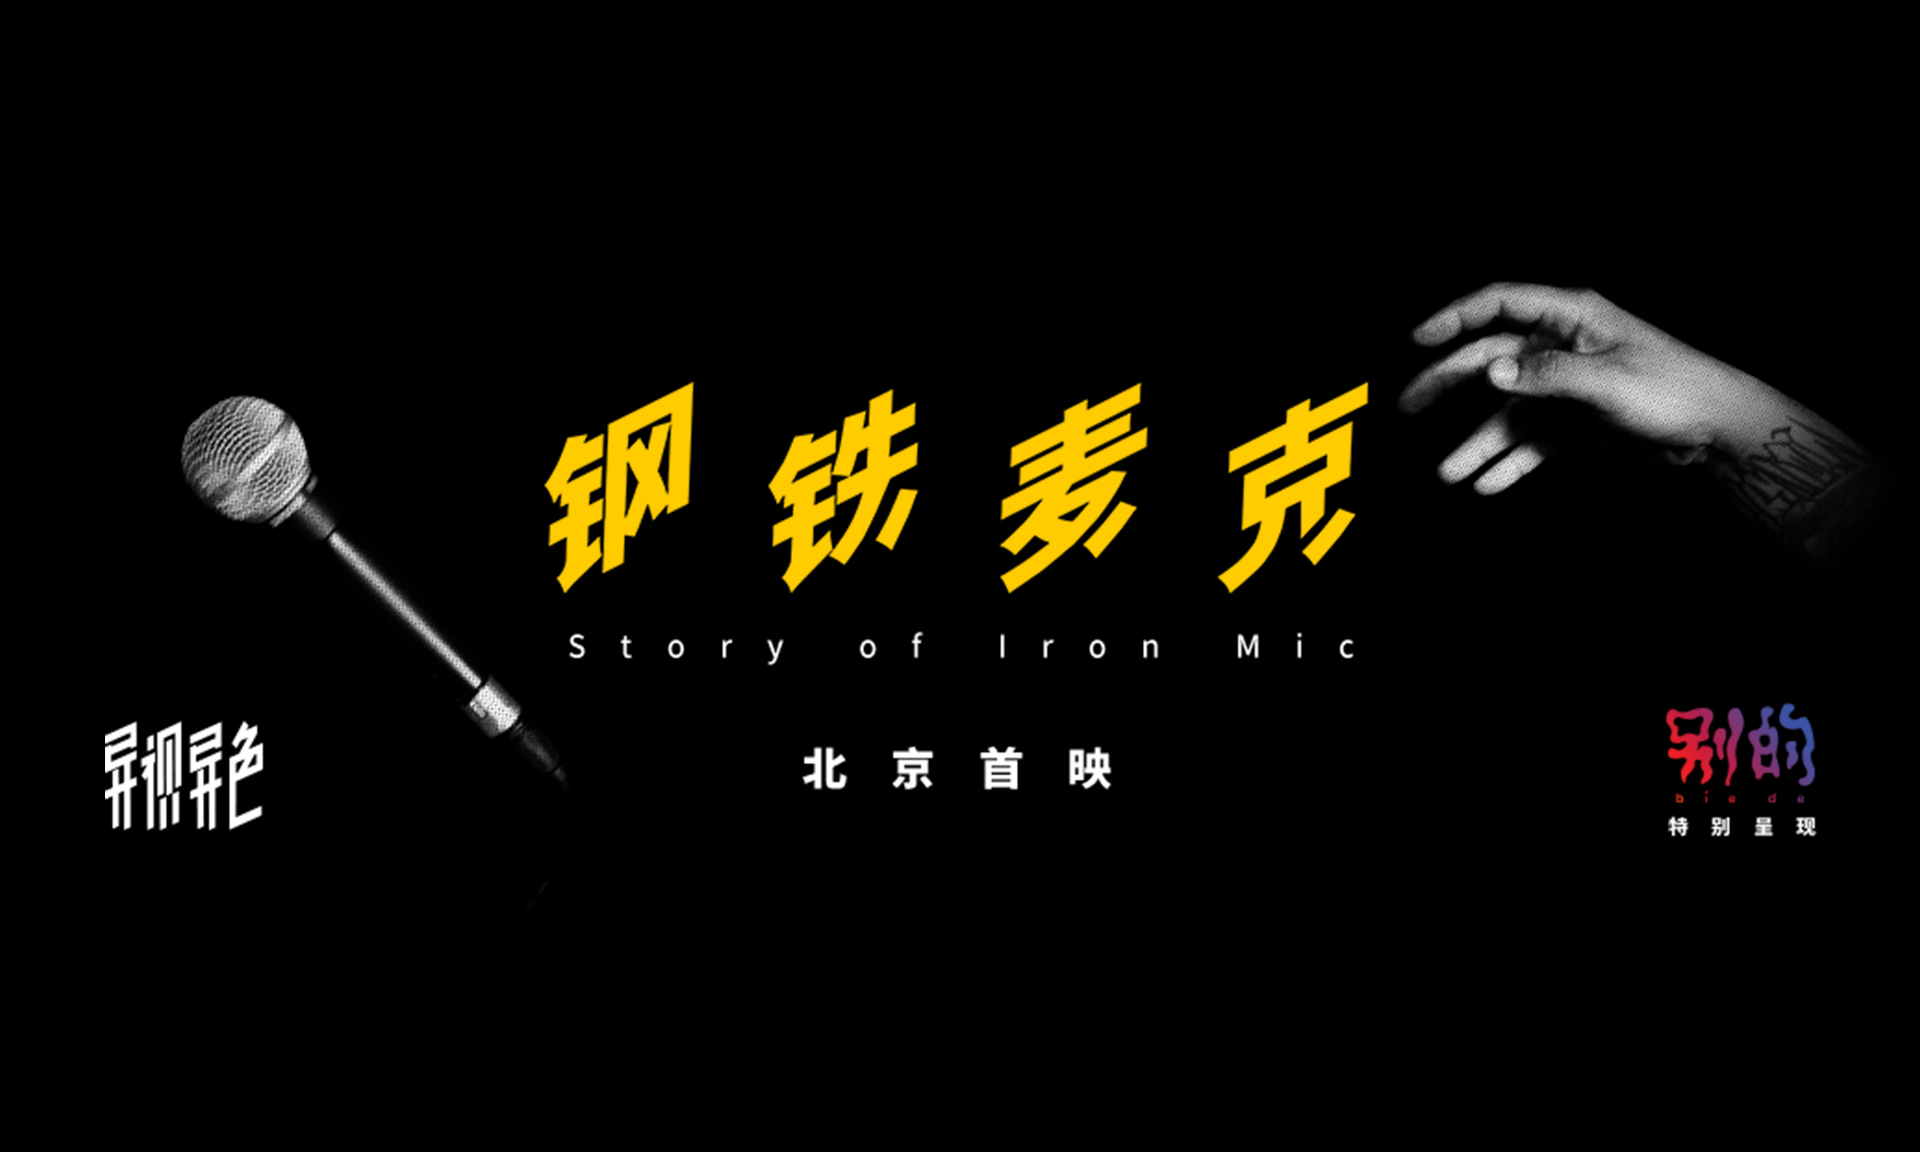 VICE 打造中国首部 “中文自由式说唱” 纪录电影《钢铁麦克》